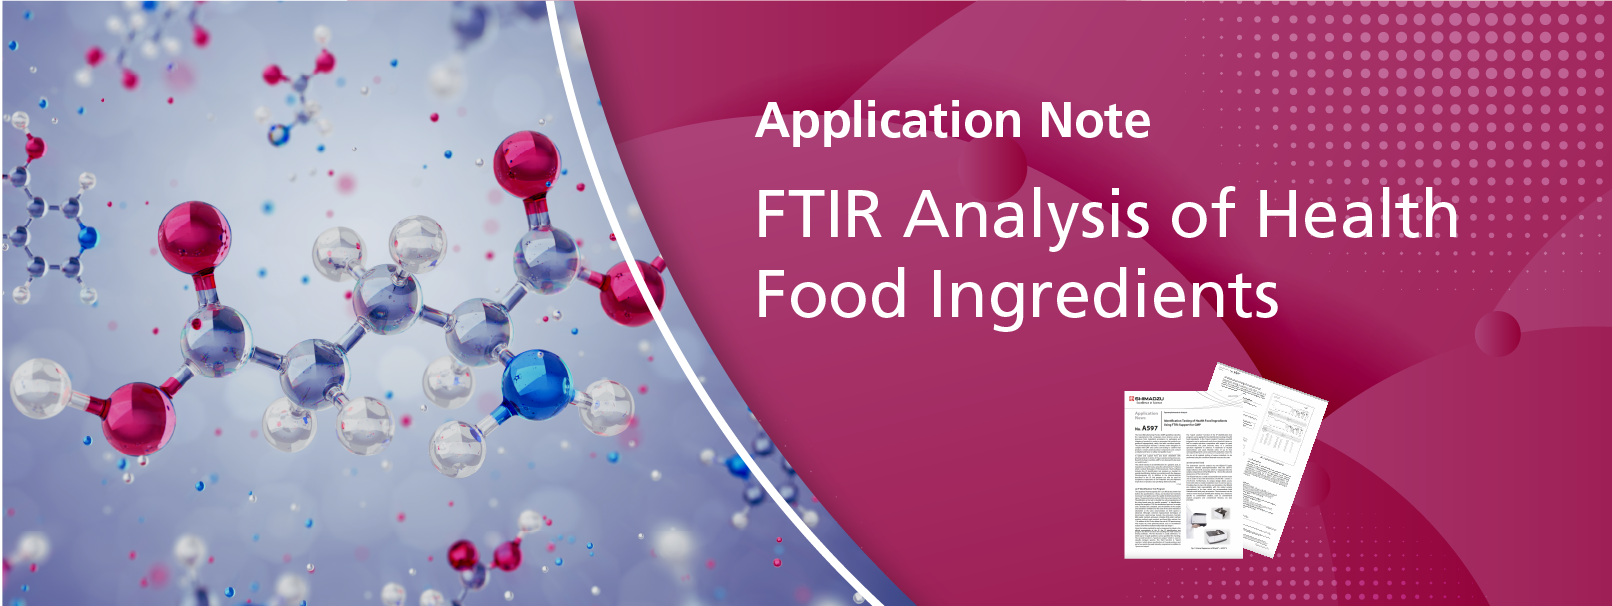 FTIR Analysis of Health Food Ingredients